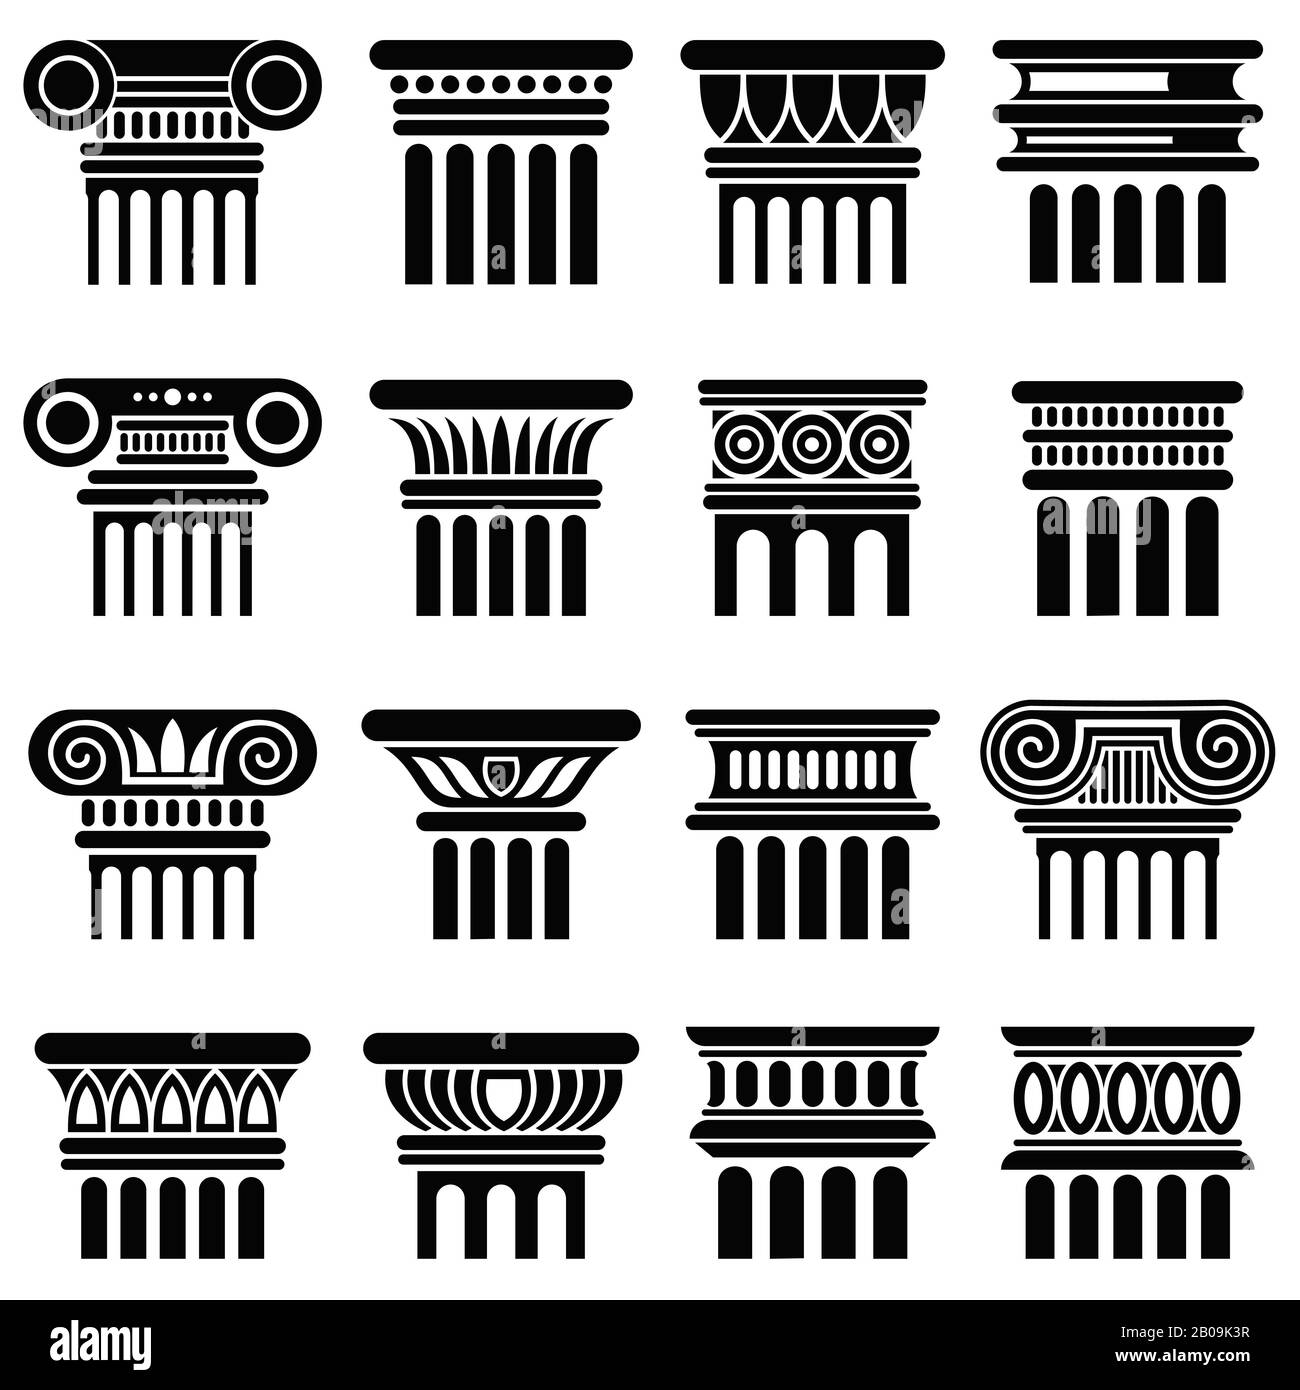 Icônes vectorielles de colonne d'architecture Rome antique. Colonne silhouette noire, ancienne illustration de colonne grecque classique Illustration de Vecteur